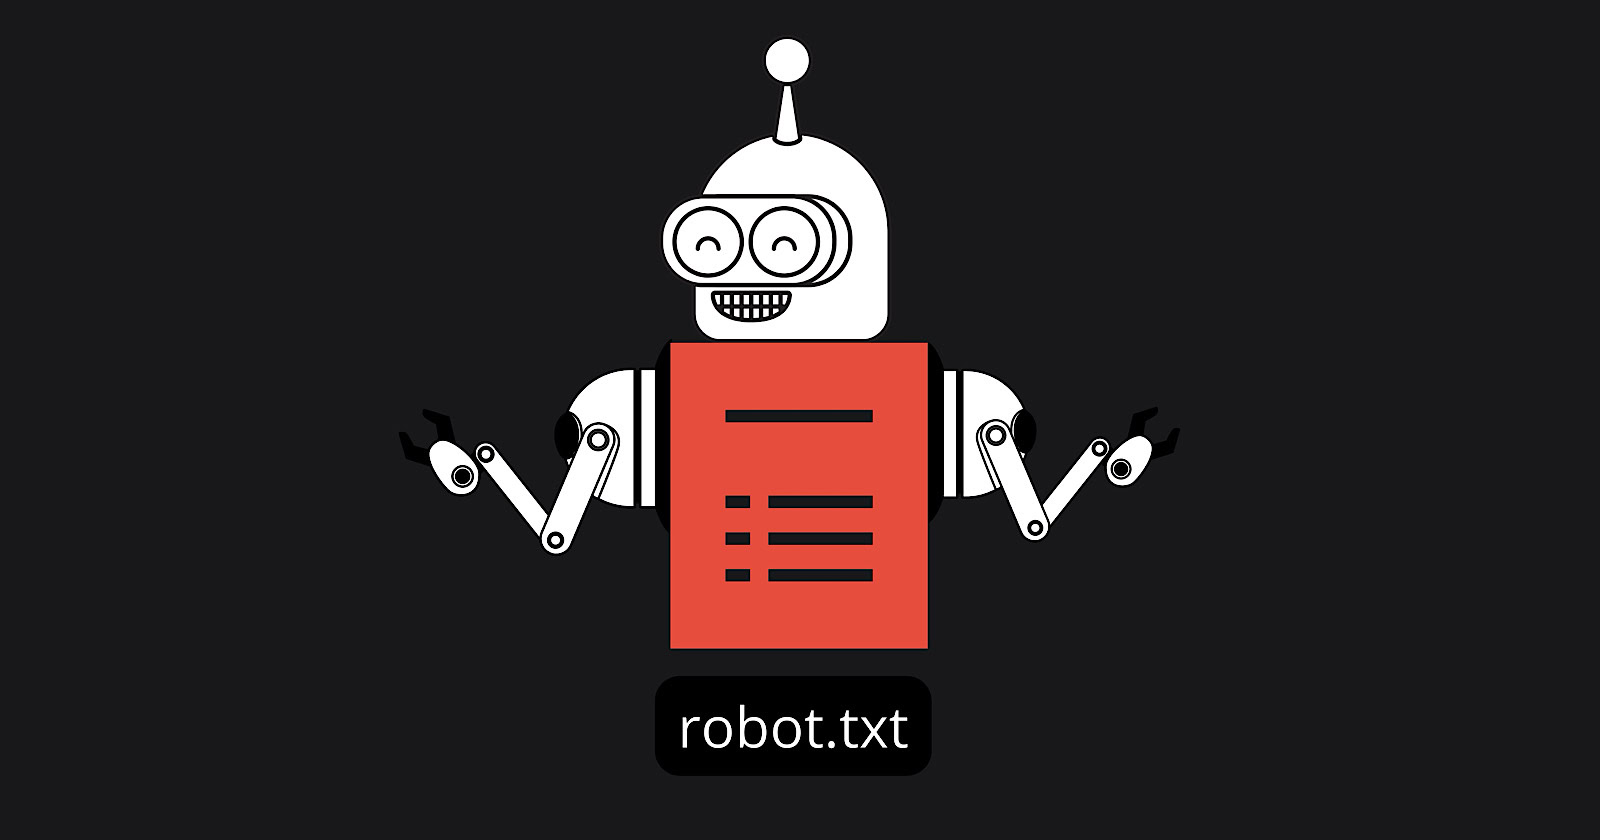 Robots.txt Turns 30: Google Highlights Hidden Strengths